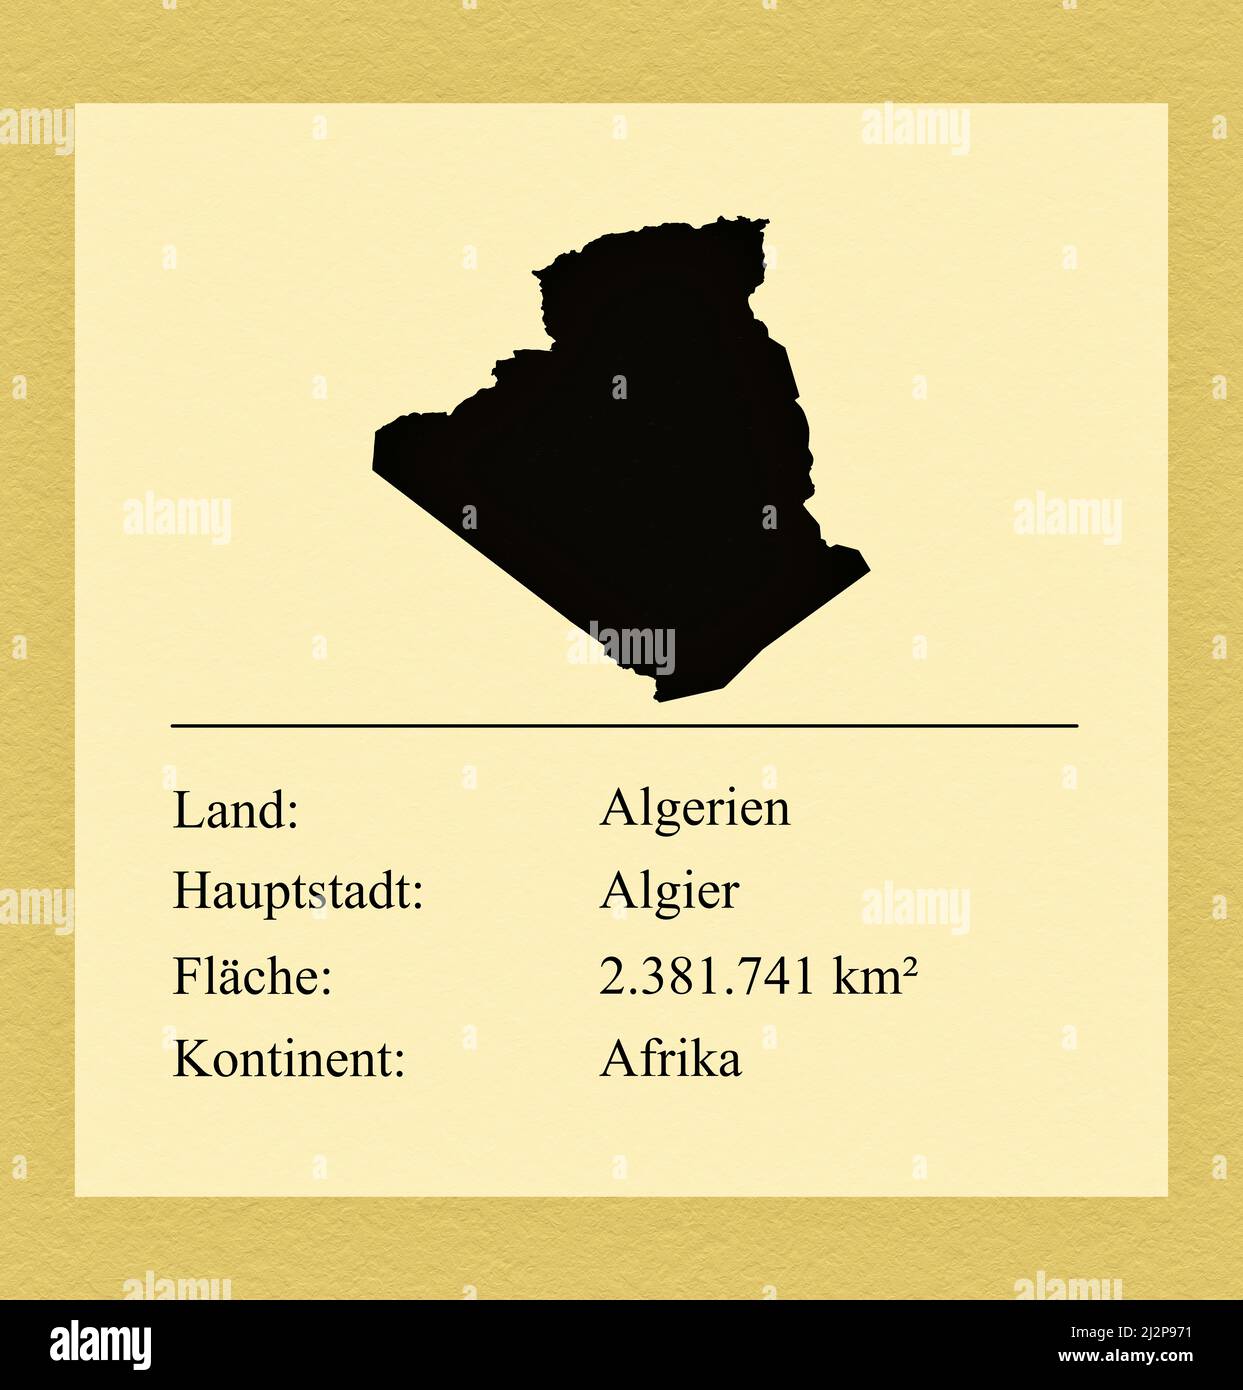 Umrisse des Landes Algerien, darunter ein kleiner Steckbrief mit Ländernamen, Hauptstadt, Fläche und Kontinent Foto Stock